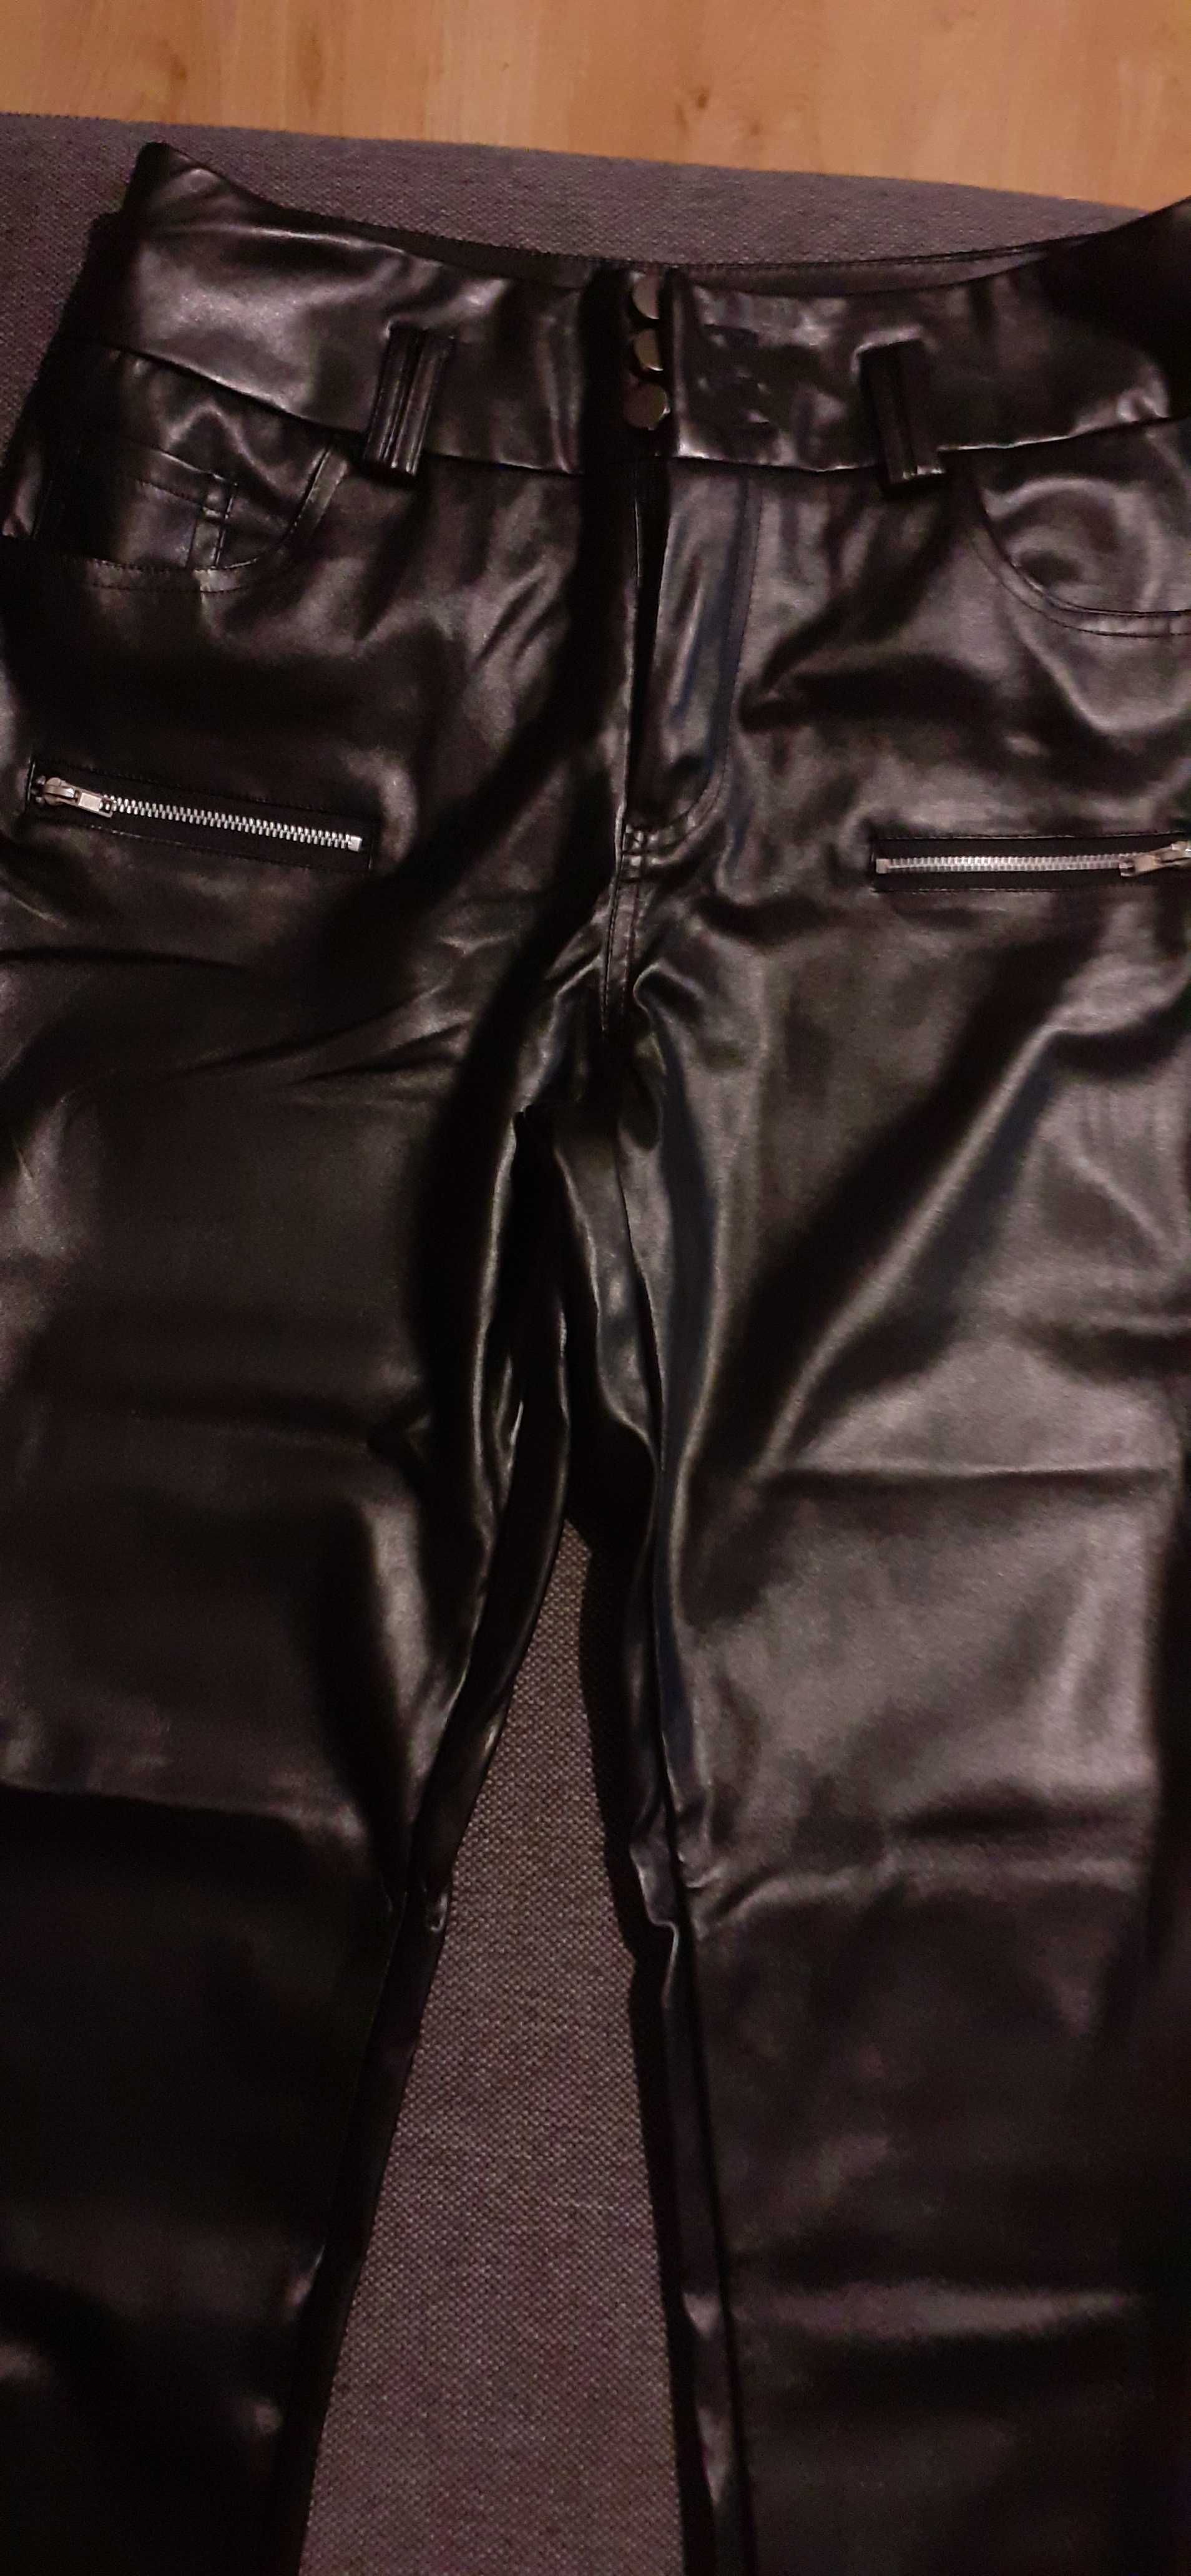 Spodnie czarne M lakierkowe